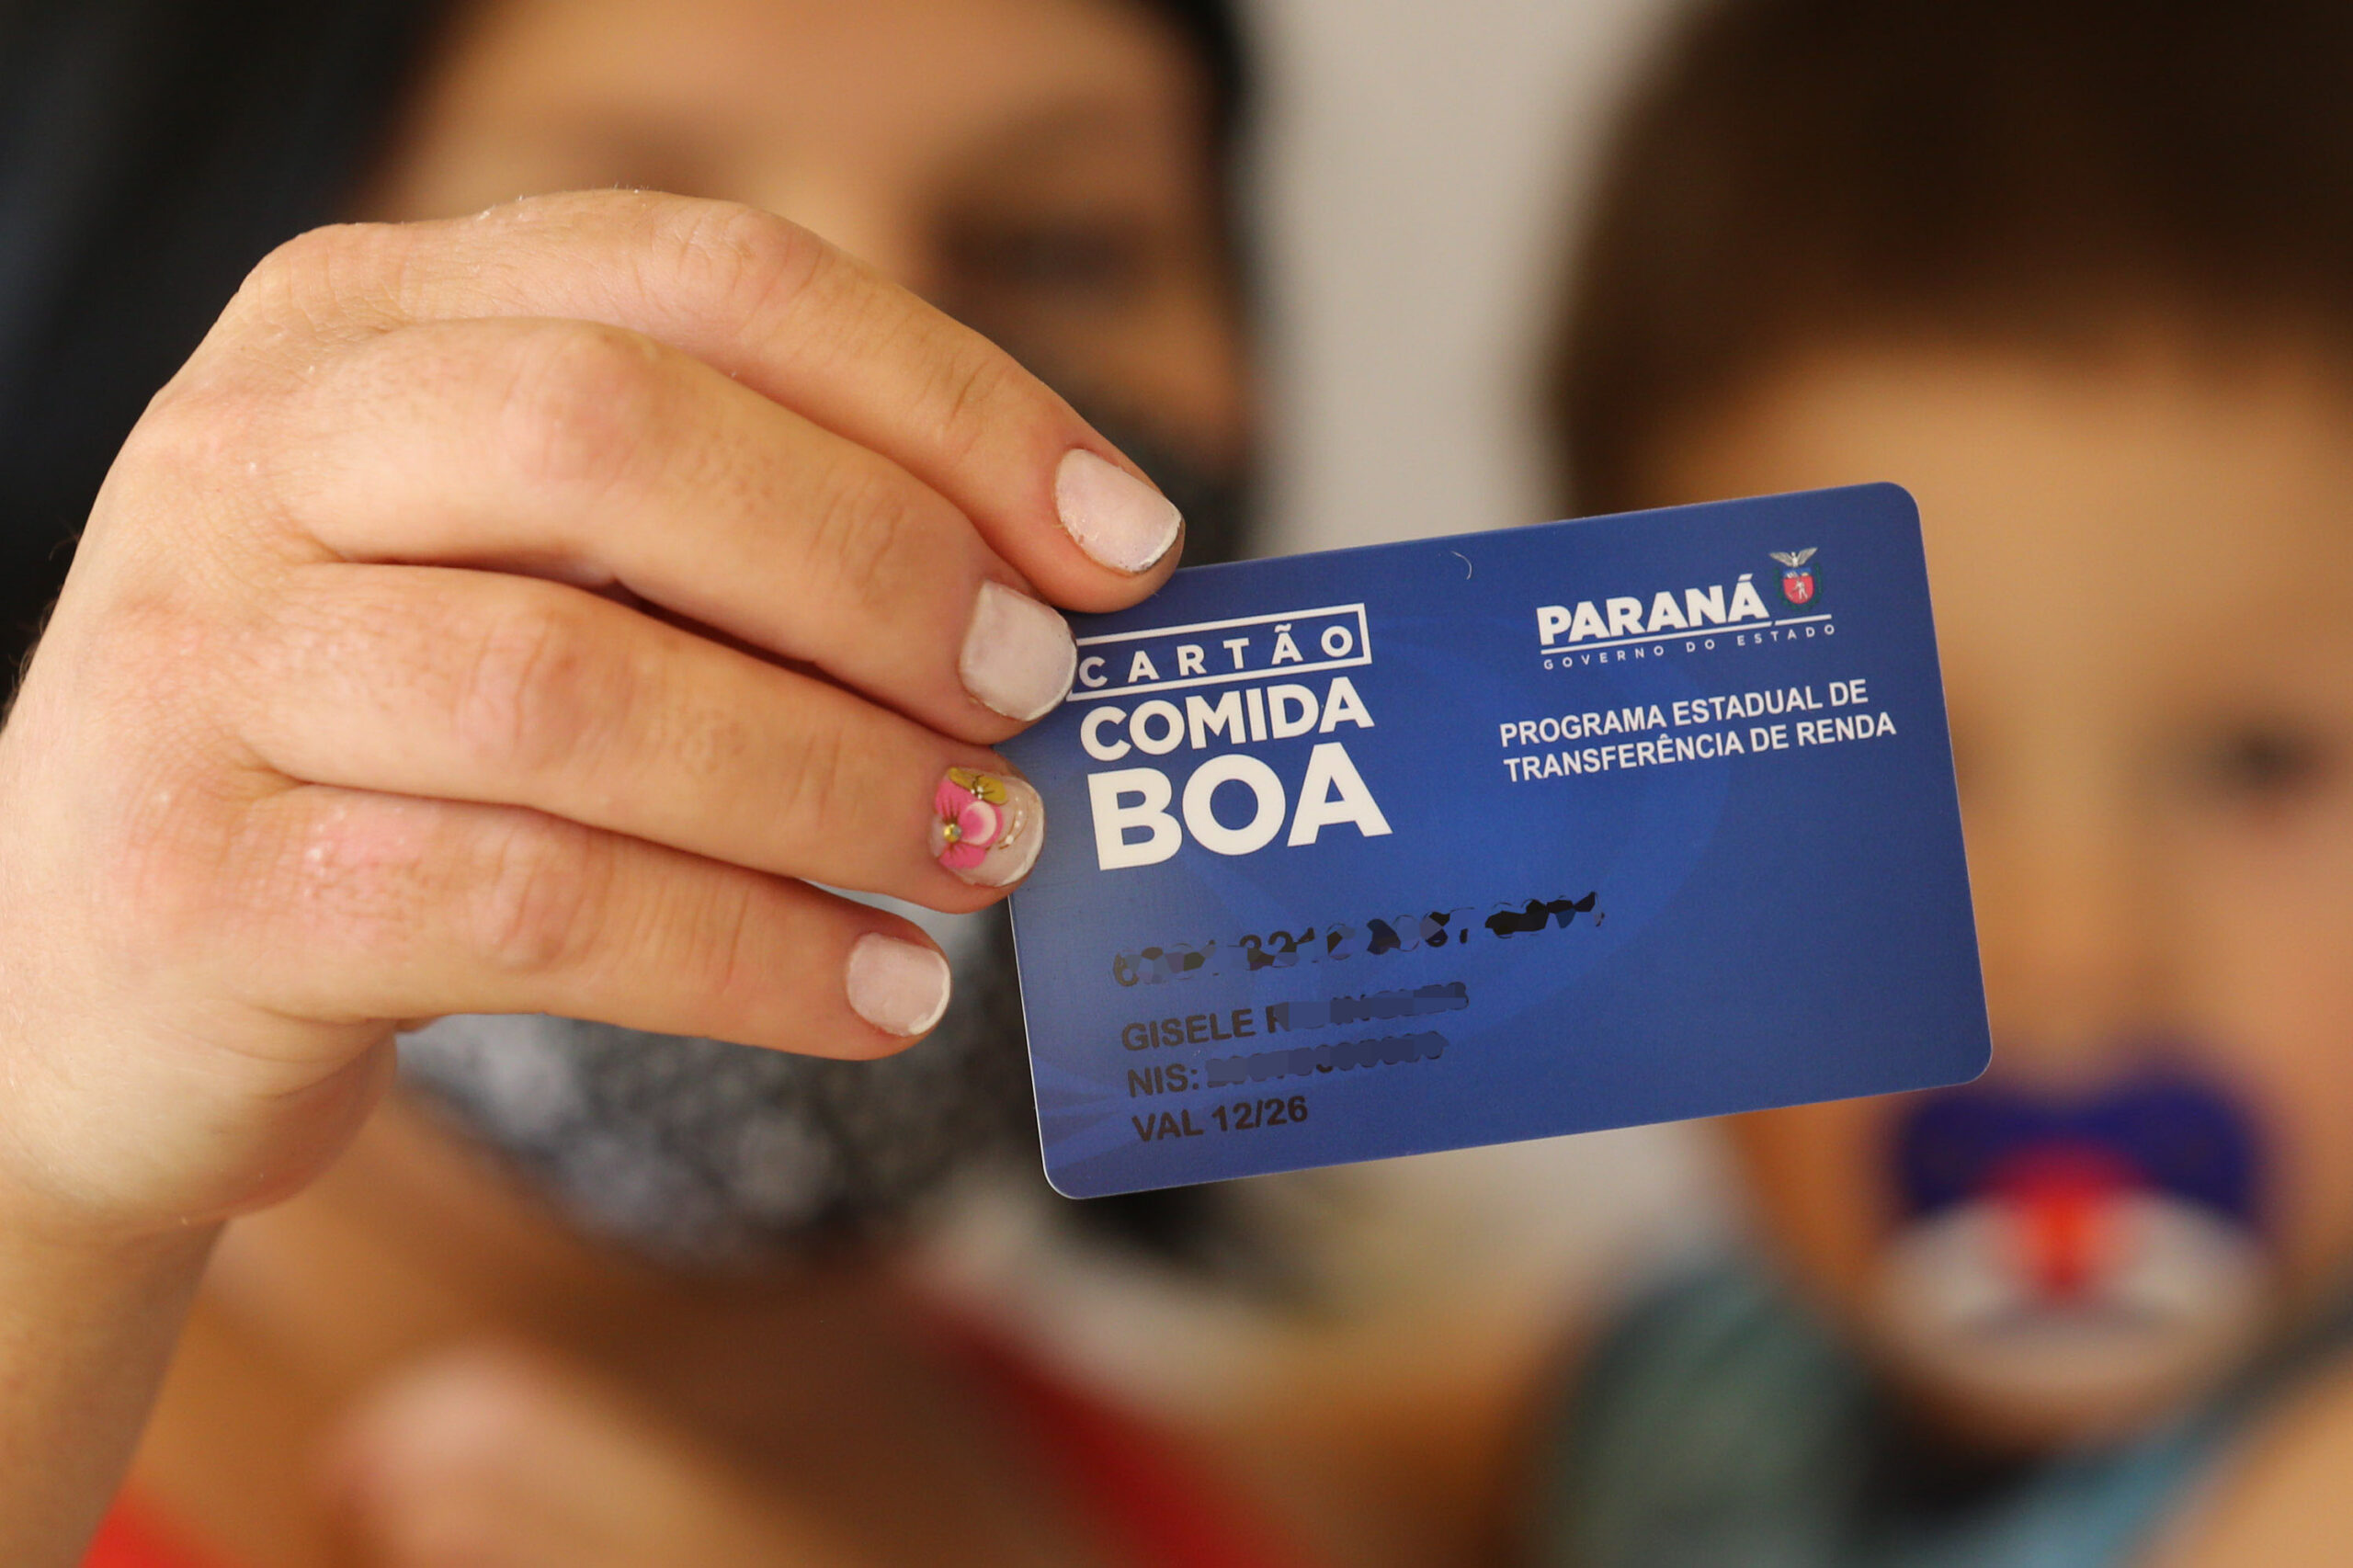 Mais de 50 mil famílias já utilizam o Cartão Comida Boa no Paraná